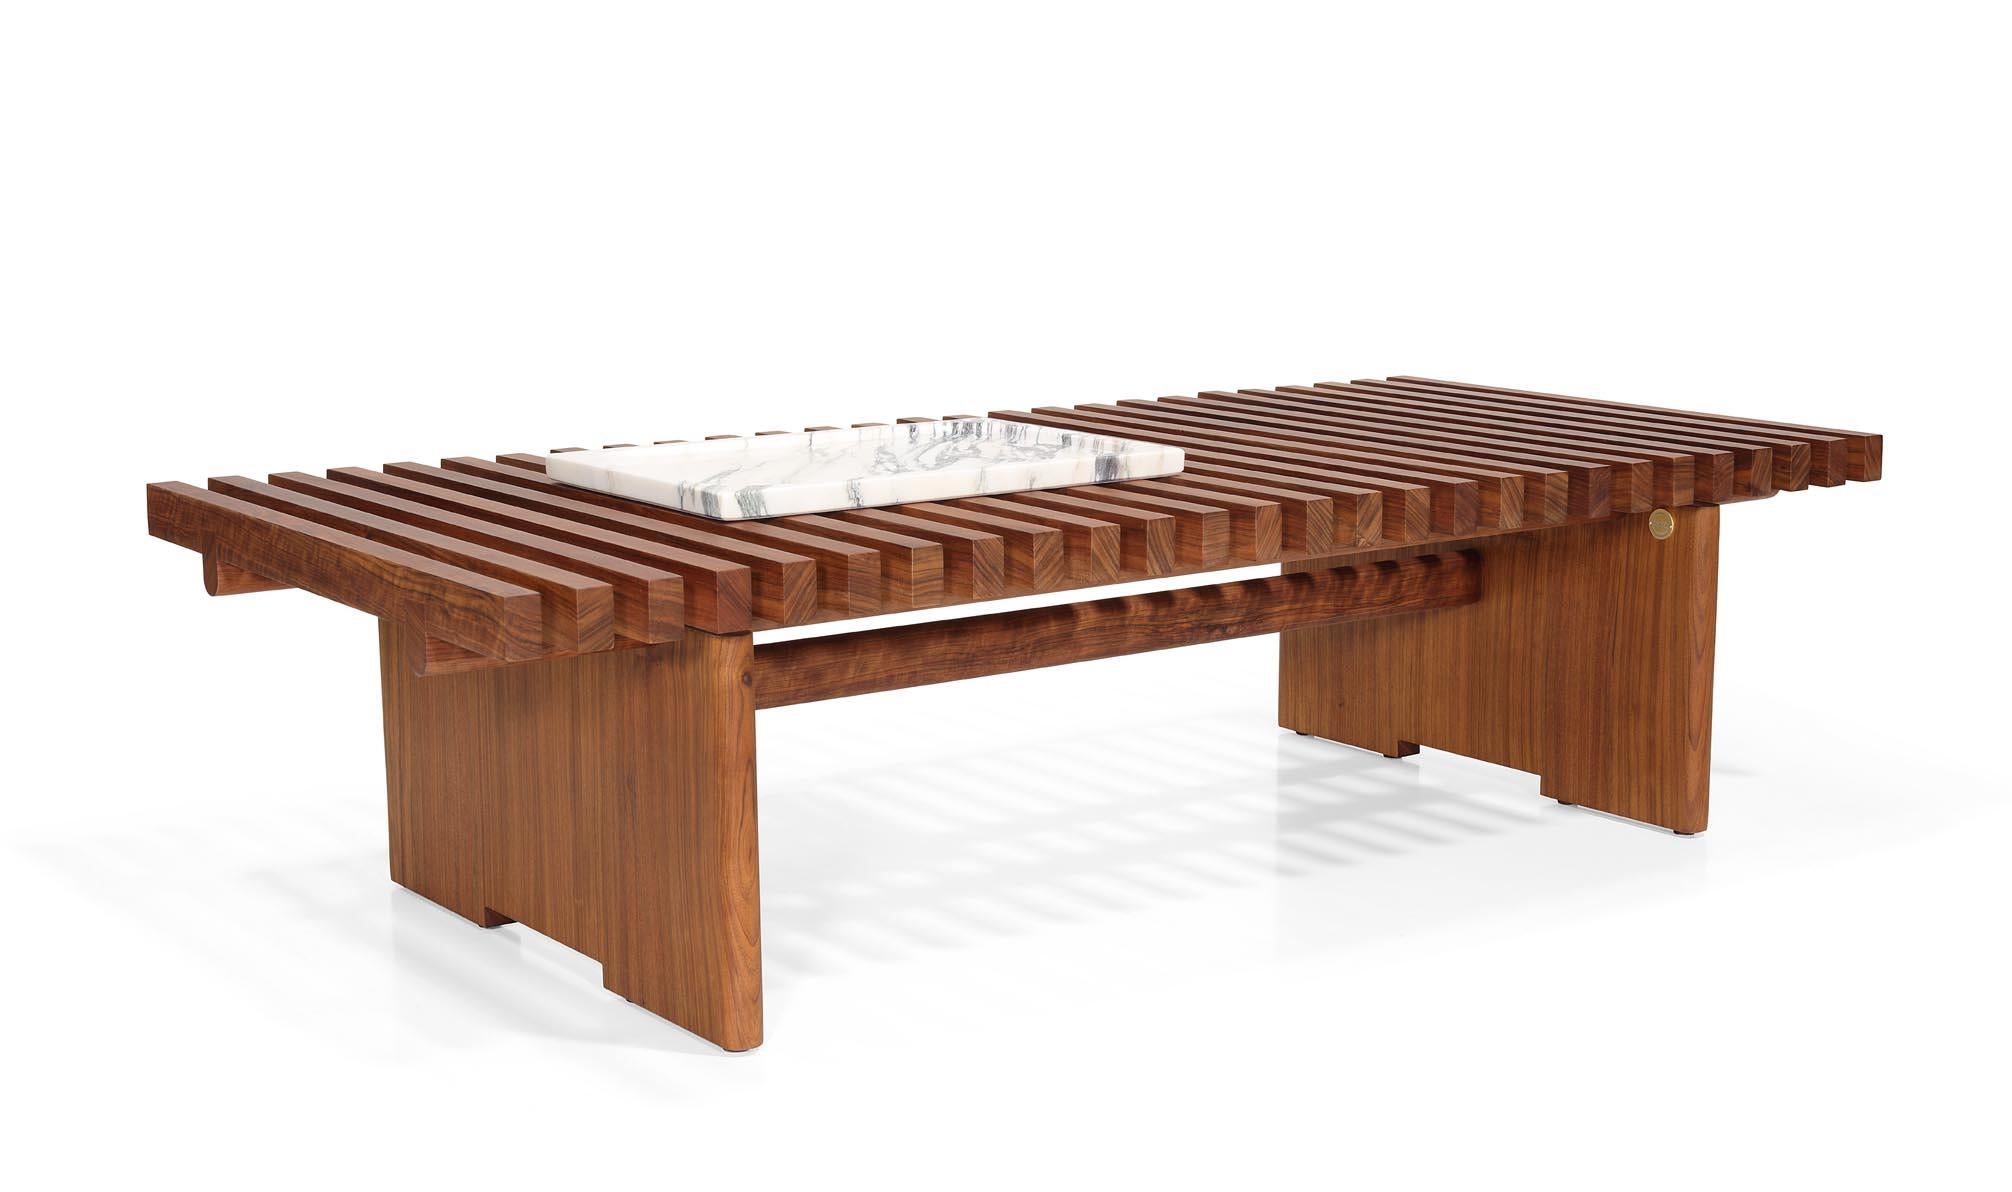 Suivant les principes du design minimaliste et multifonctionnel, inspiré de la menuiserie japonaise et où les joints de bois sont la clé pour produire cette table. Une table d'apparence légère, mise en valeur par le plateau à lattes, les pieds et le